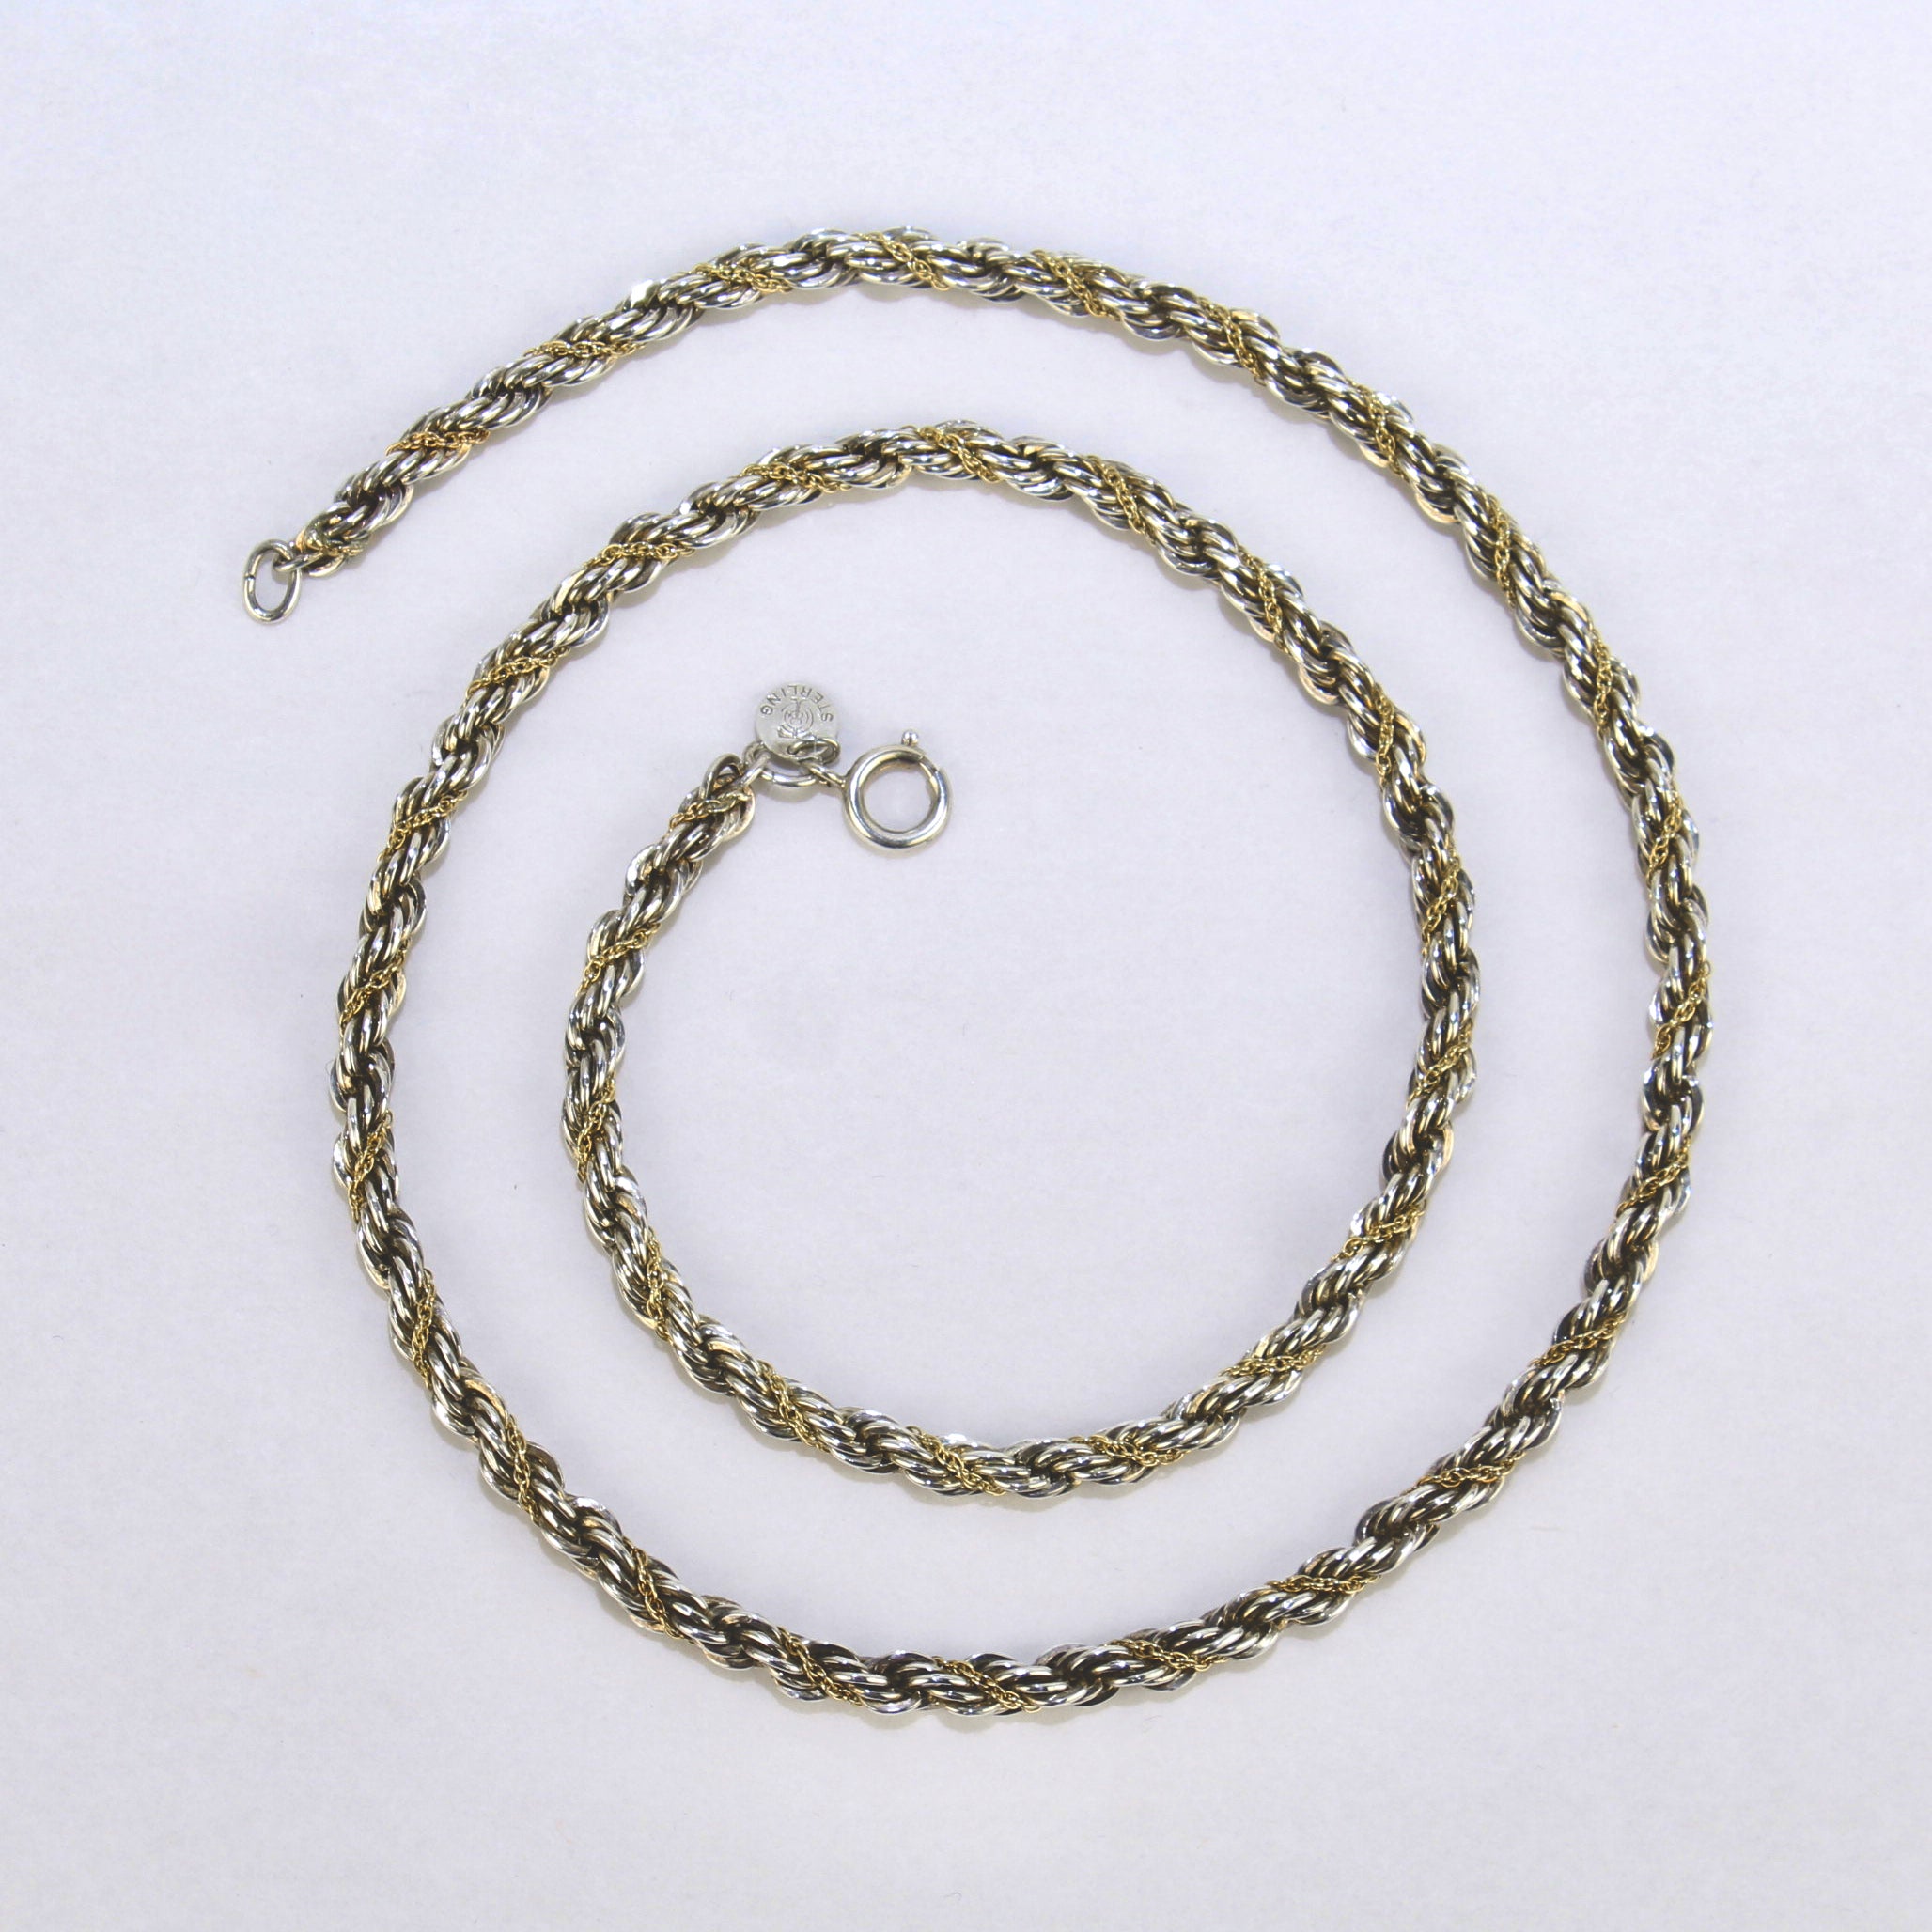 Eine sehr feine Tiffany & Co. 14k Gold und Sterling Silber Seil Twist Halskette.

Bestehend aus einem langen 24-Zoll-Sterling-Silber Seil-Link-Halskette mit verdrehten 14k Gold Kabelkette zwischen dem Silber Link-Muster gewickelt. 

Einfach eine